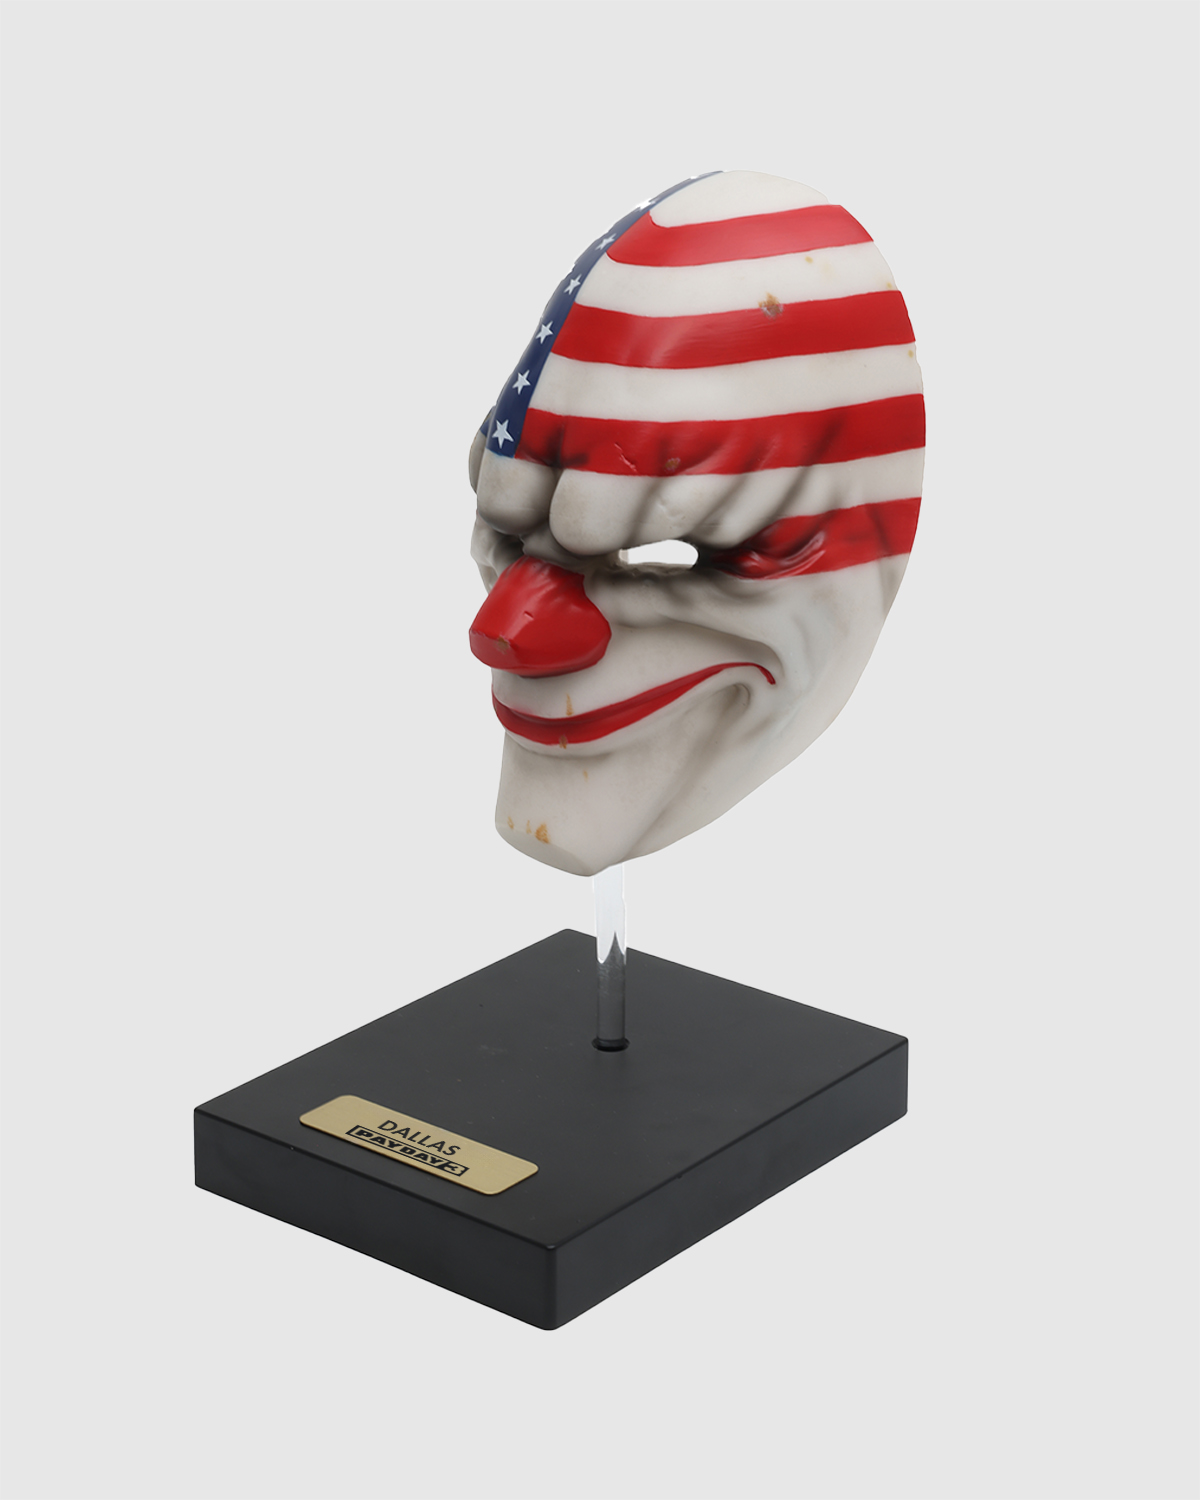 Limited Edition 1:2 scale Desktop Replica "Dallas Mask"